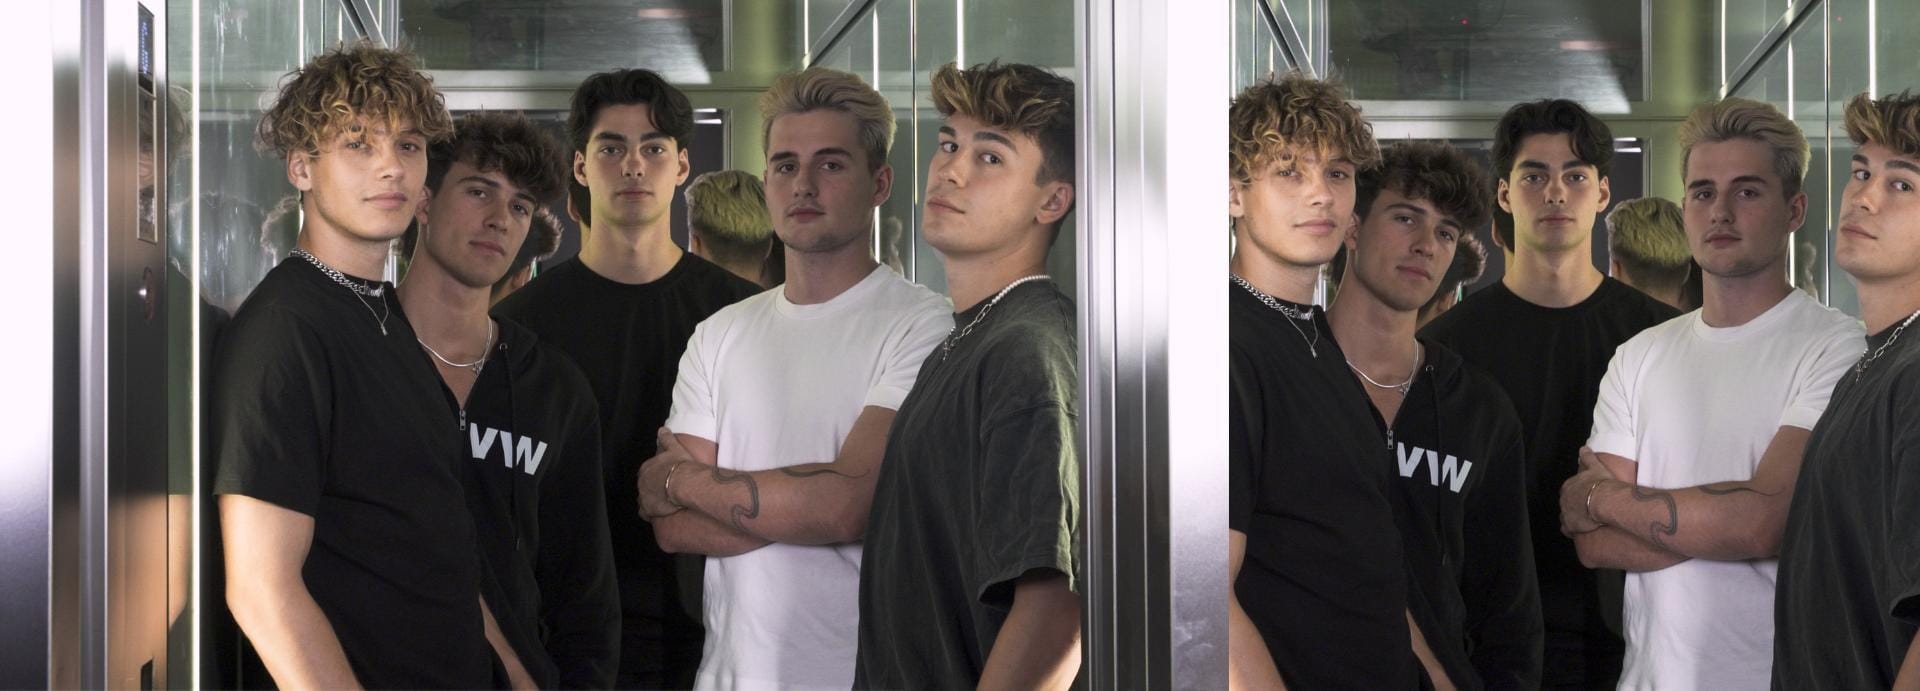 Die Elevator Boys: Bene, Tim, Jacob, Luis und Julien.